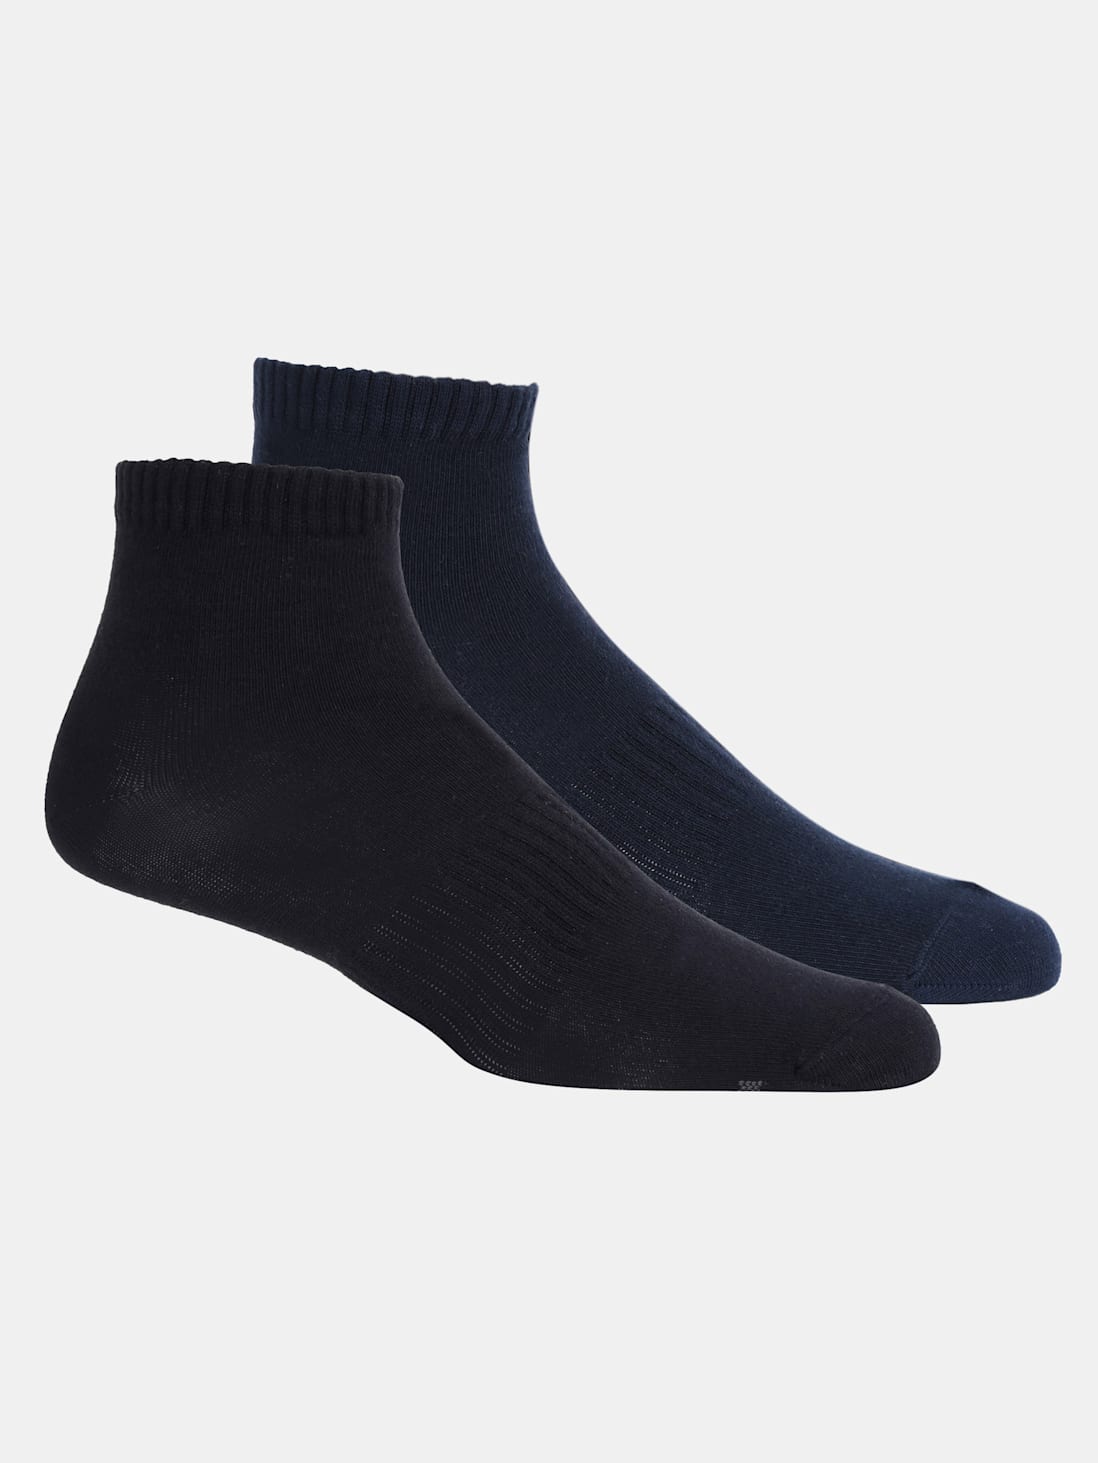 Buy Black & Navy Men Ankle Socks Pack of 2 for Men 7106 | Jockey India